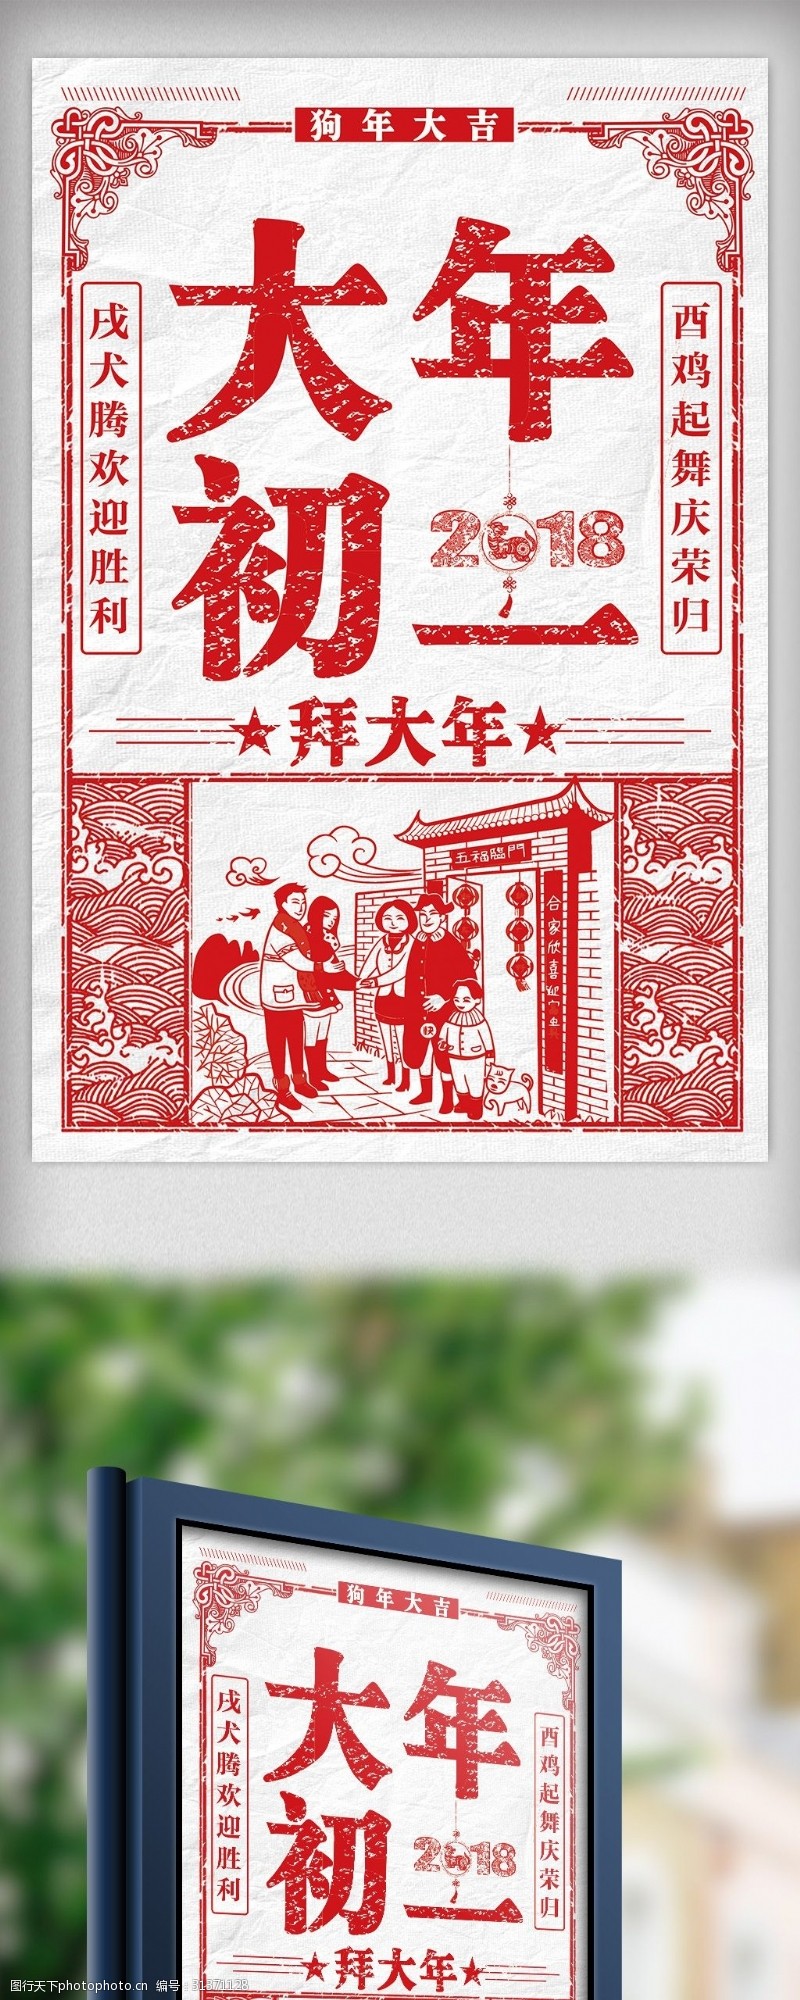 团圆饭2018红色剪纸风格大年初一海报